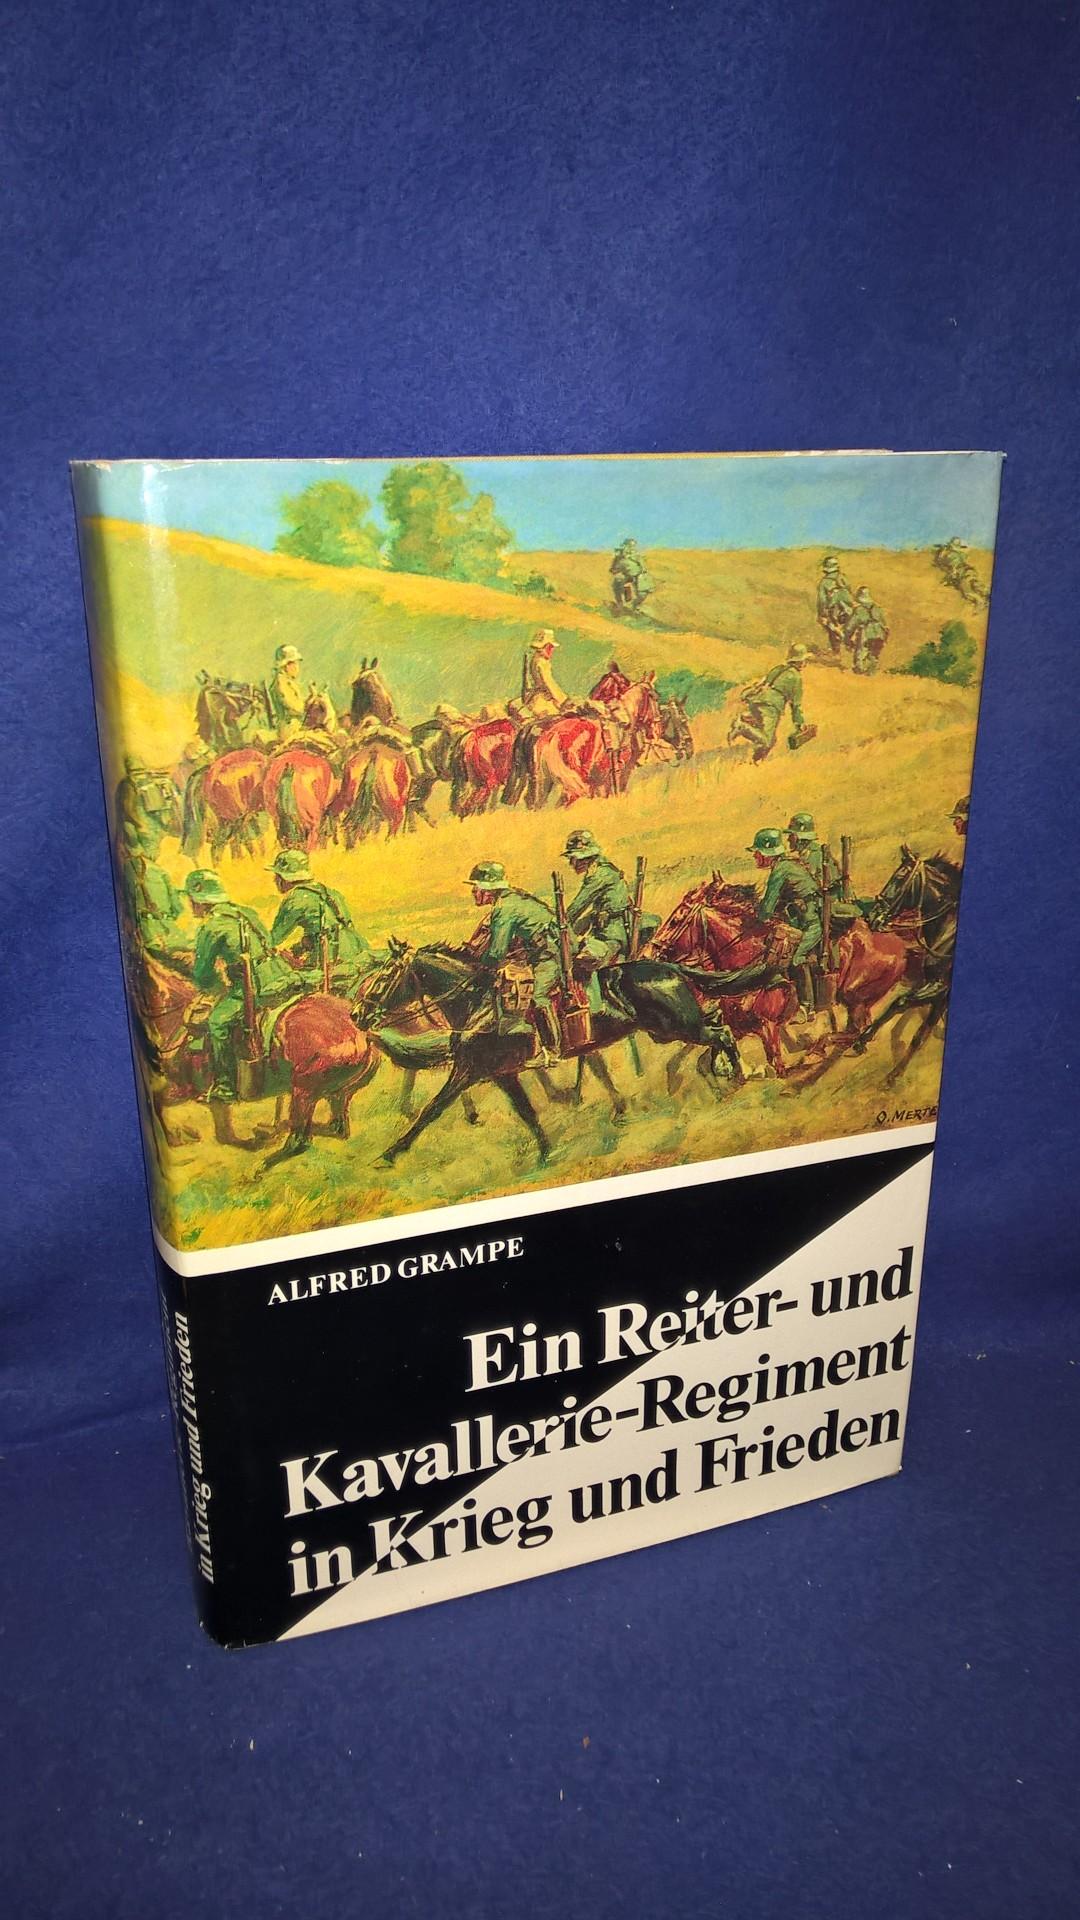 Ein Reiter- und Kavallerie-Regiment in Krieg und Frieden. 15. (Preuß.) Reiter-Regiment Kav.-Regt. 15 und seine Kriegseinheiten.